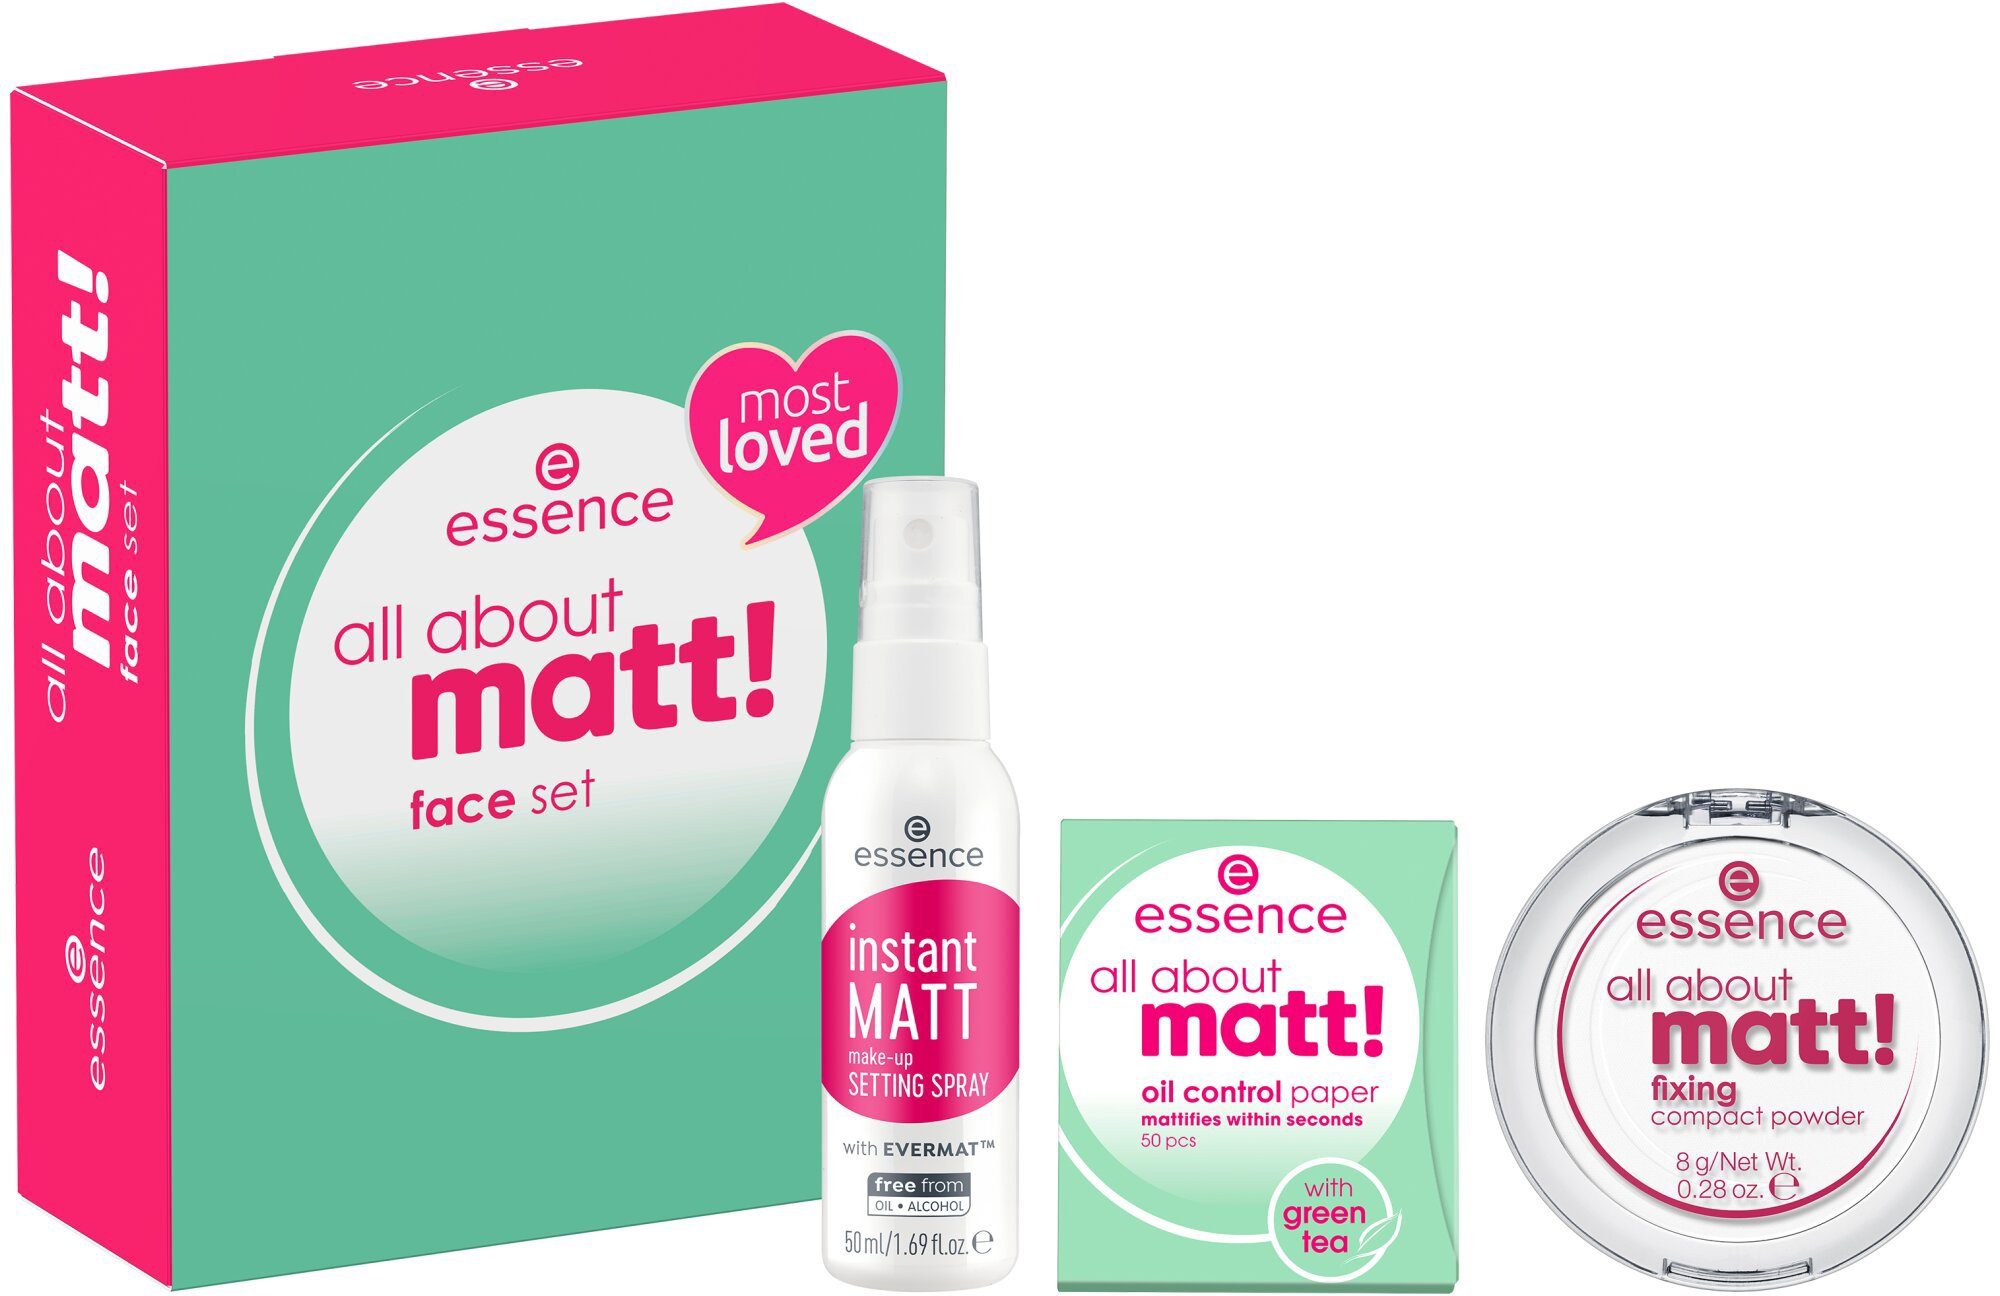 Set about 3-tlg. all face matt! Make-up Essence set,